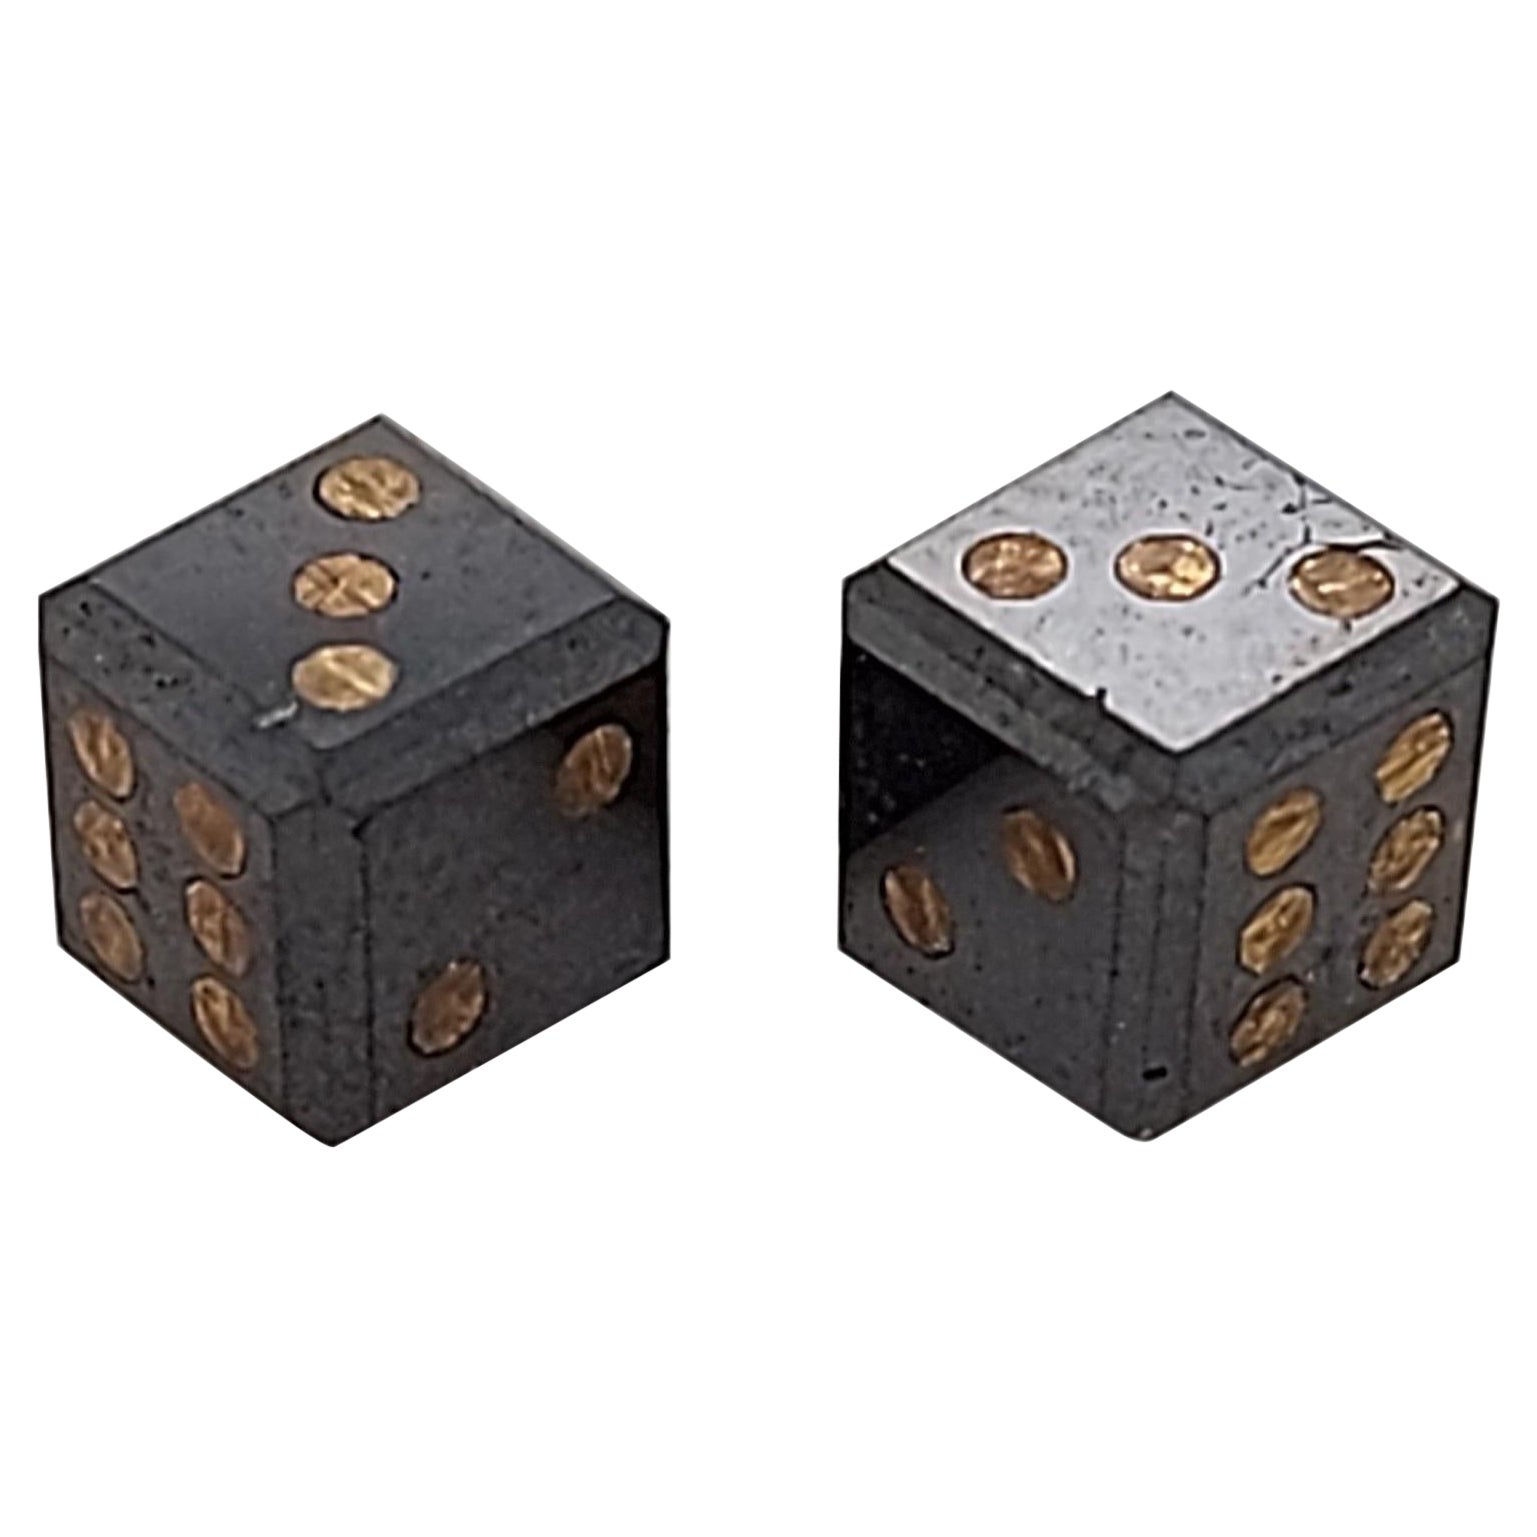 Pair of Natural 2, 17 Carat Black Diamond Cubes / Dice with Gold Inlay